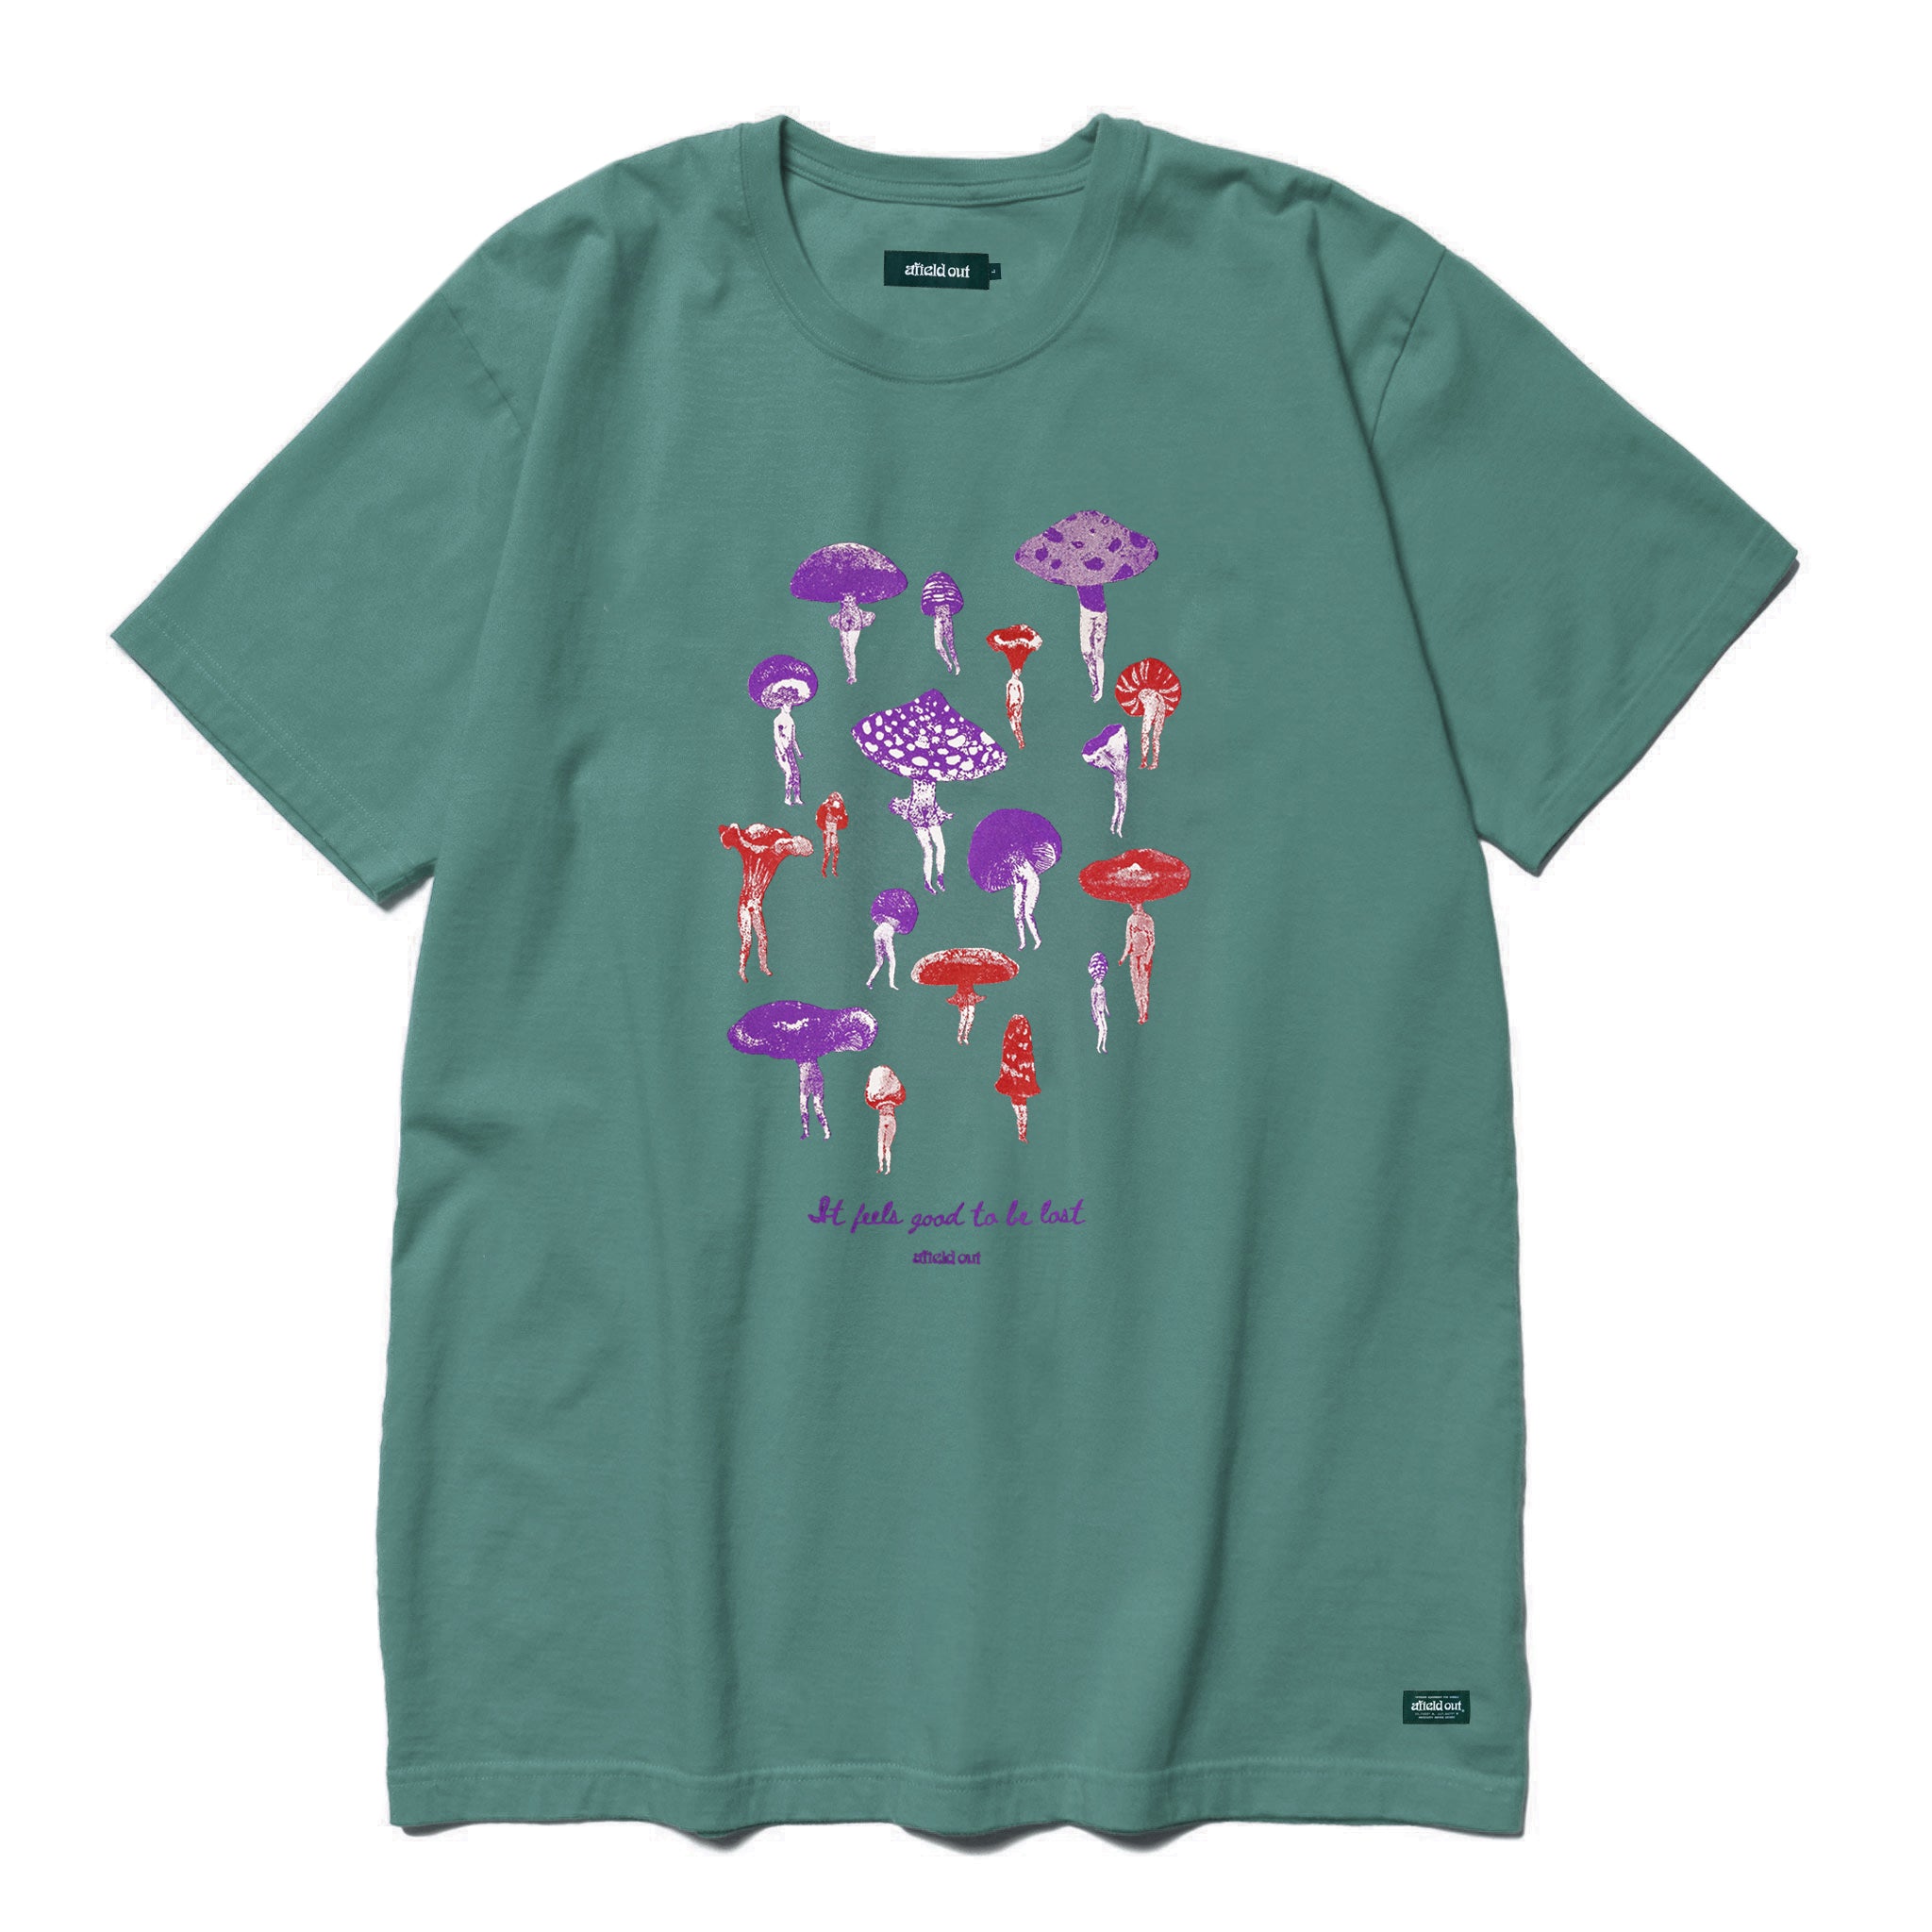 Teal Daydream T-Shirt